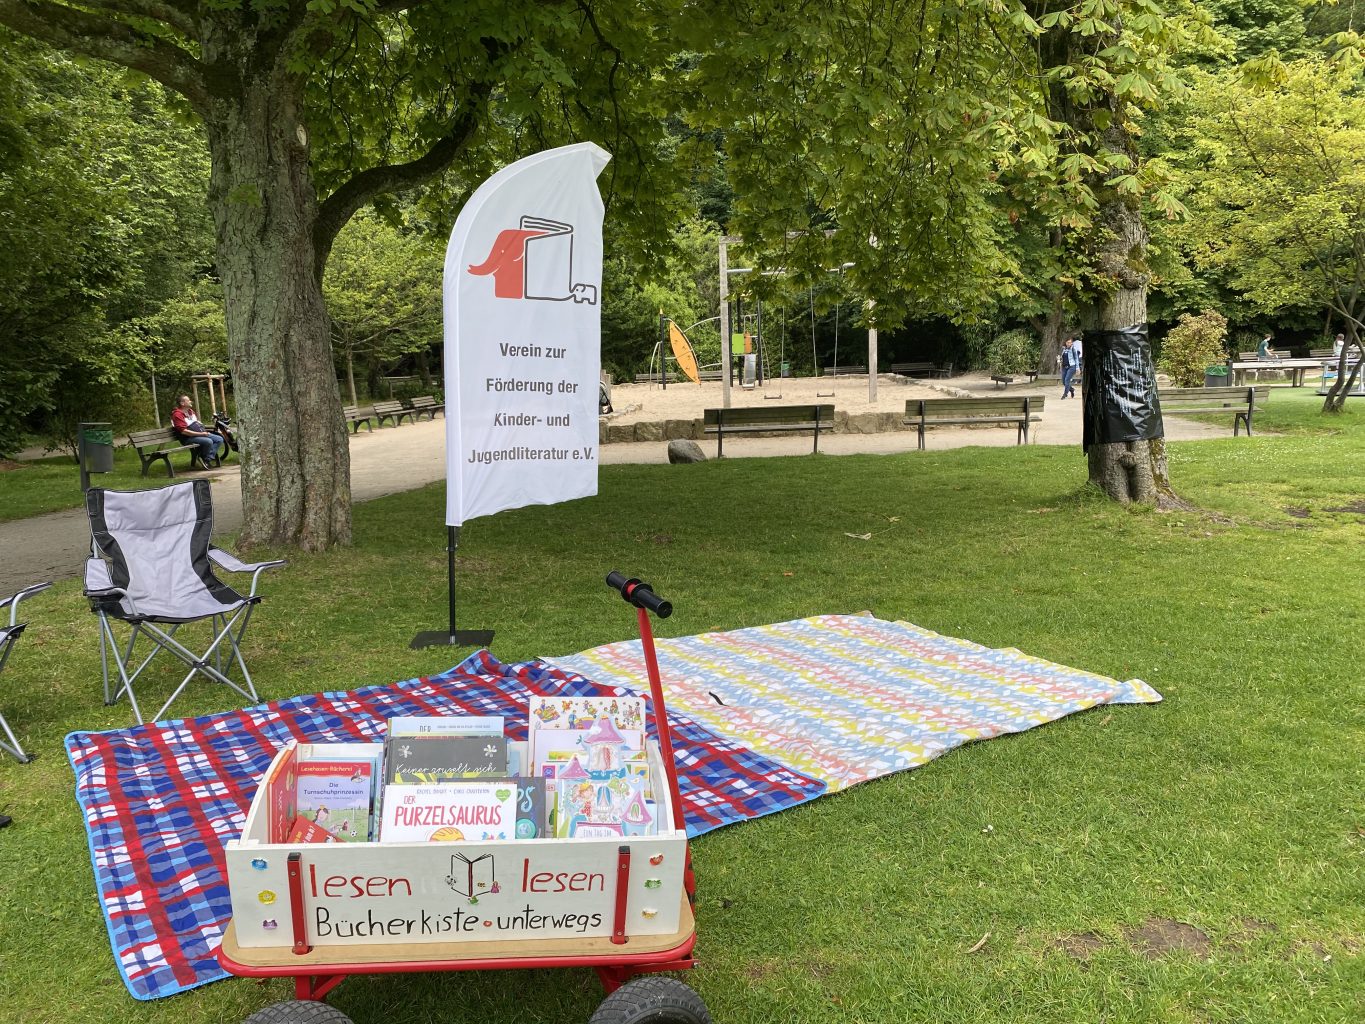 Lesung im Schlosspark Borbeck; Decken und Bollerwagen vor Kinderspielplatz